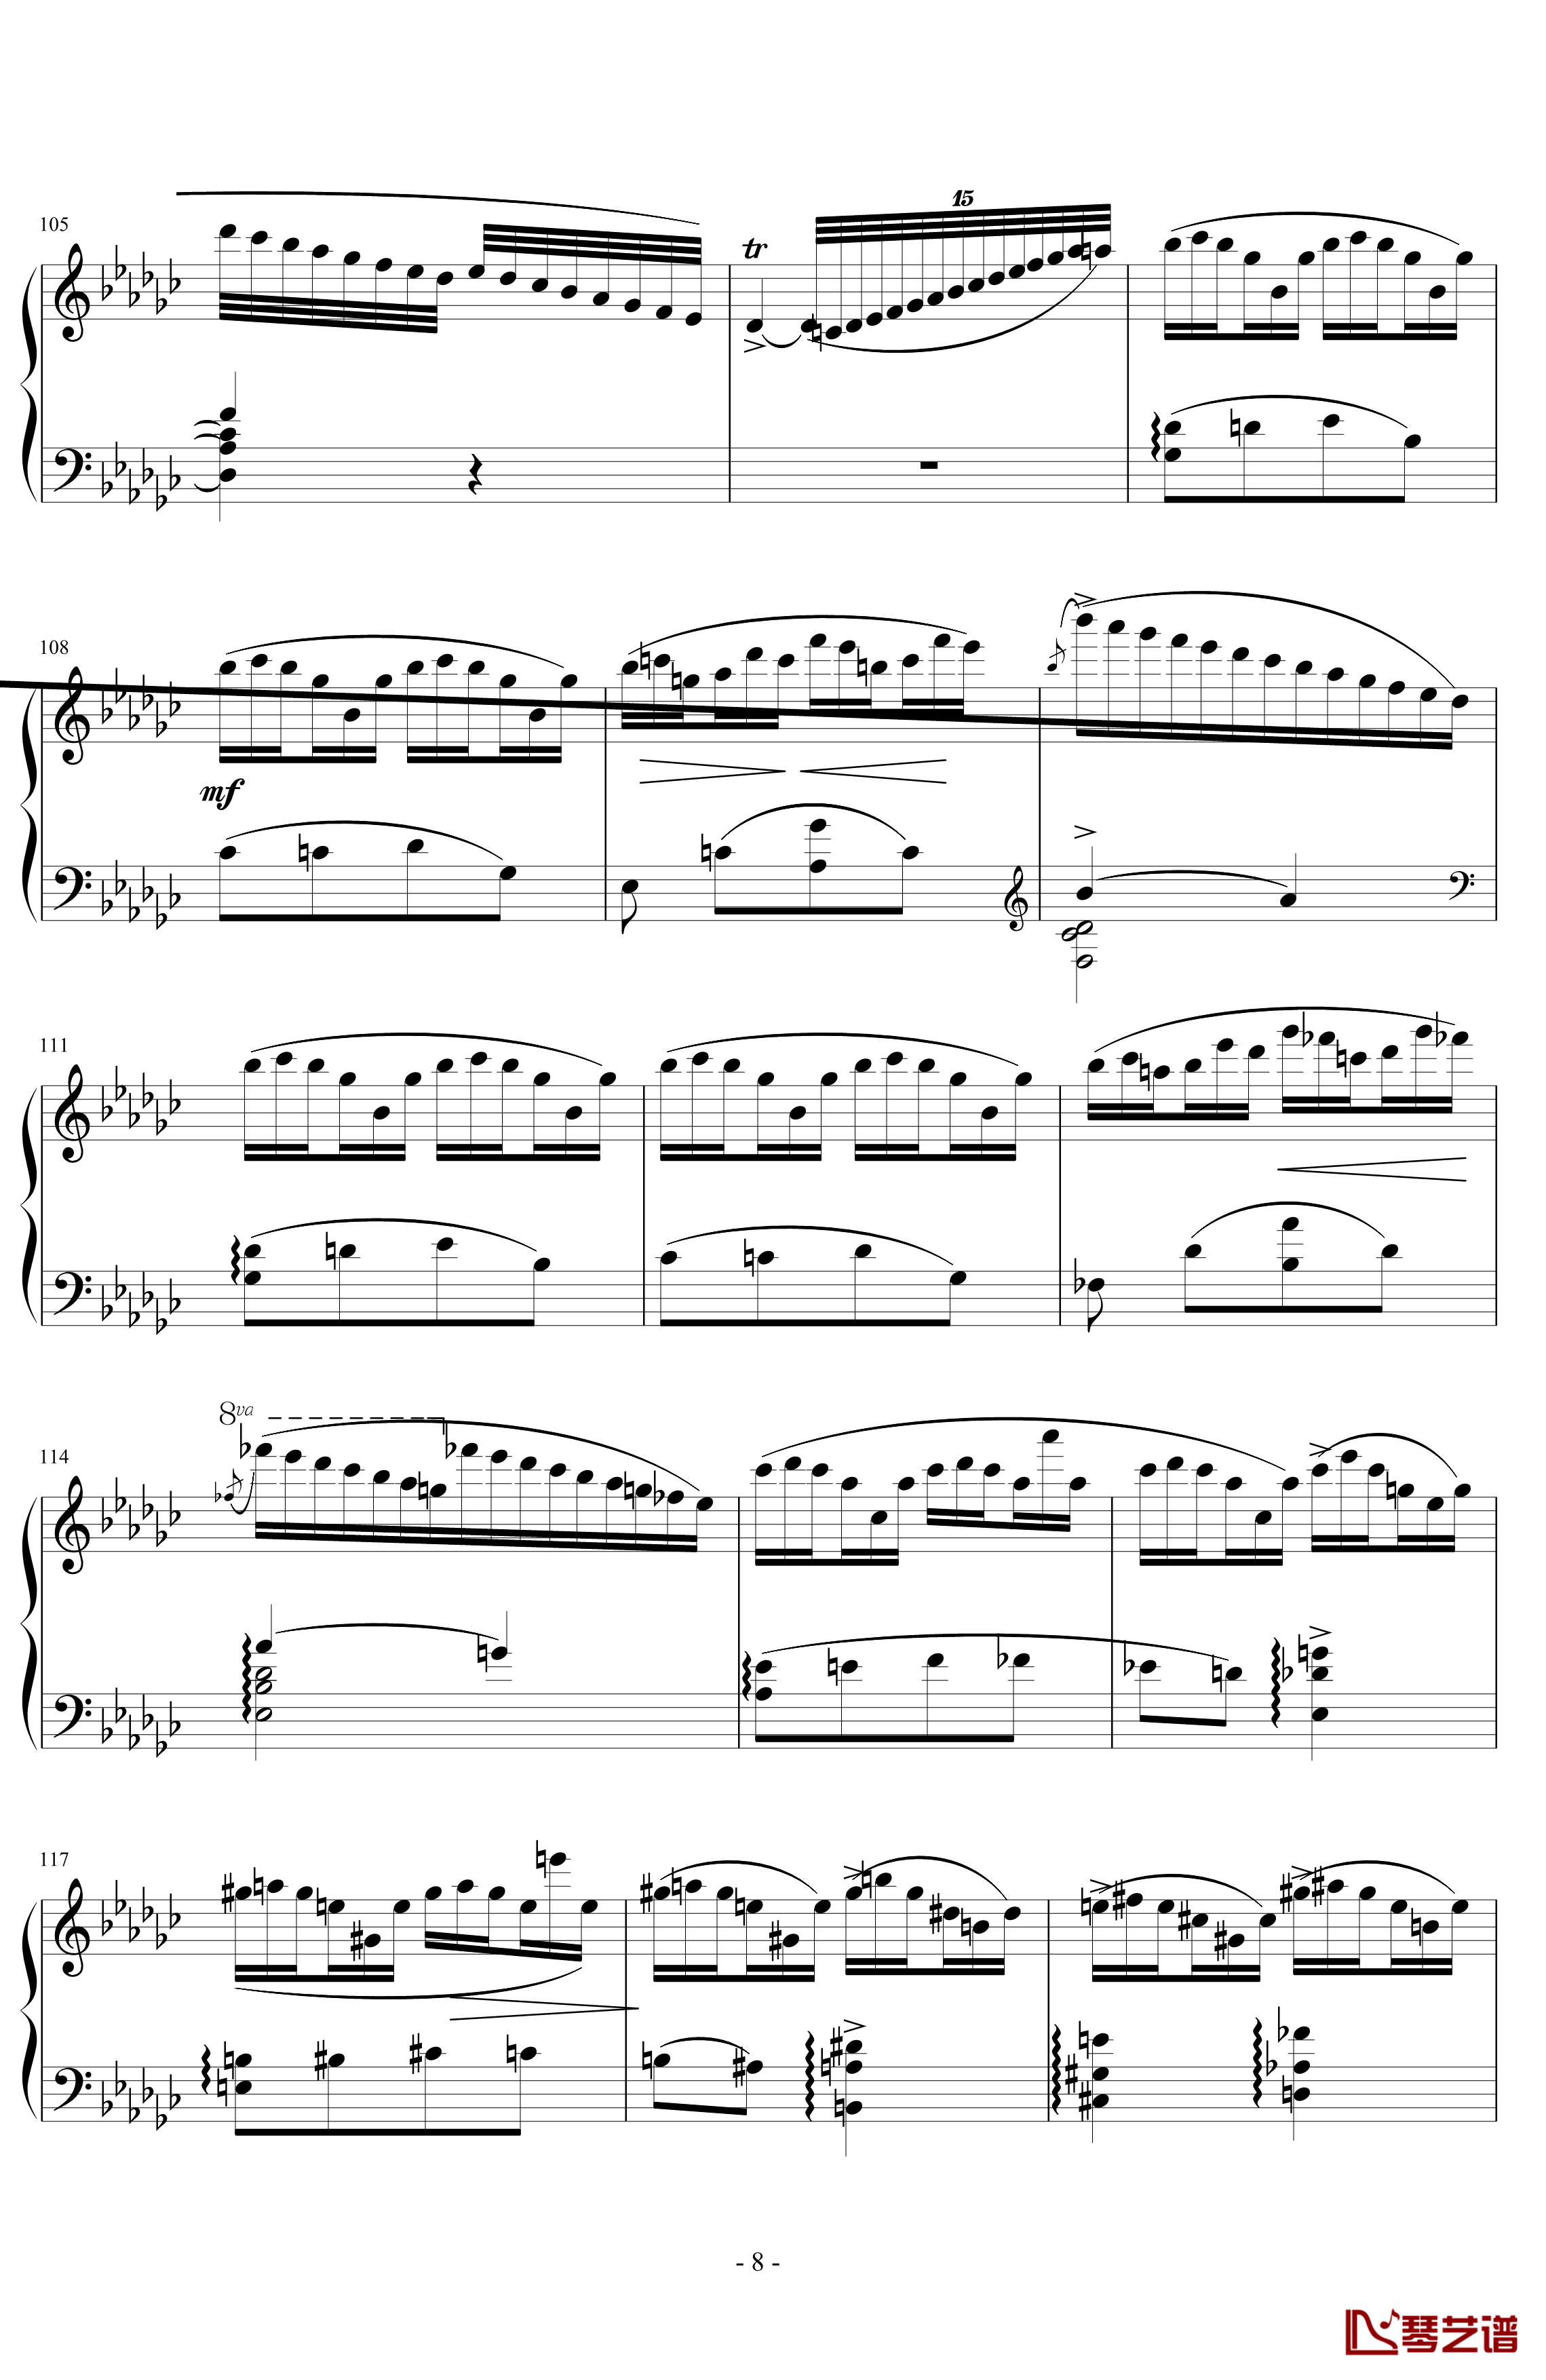 《练习曲Op.25 No.3》钢琴谱-阿连斯基-希望能为大家带来惊喜8